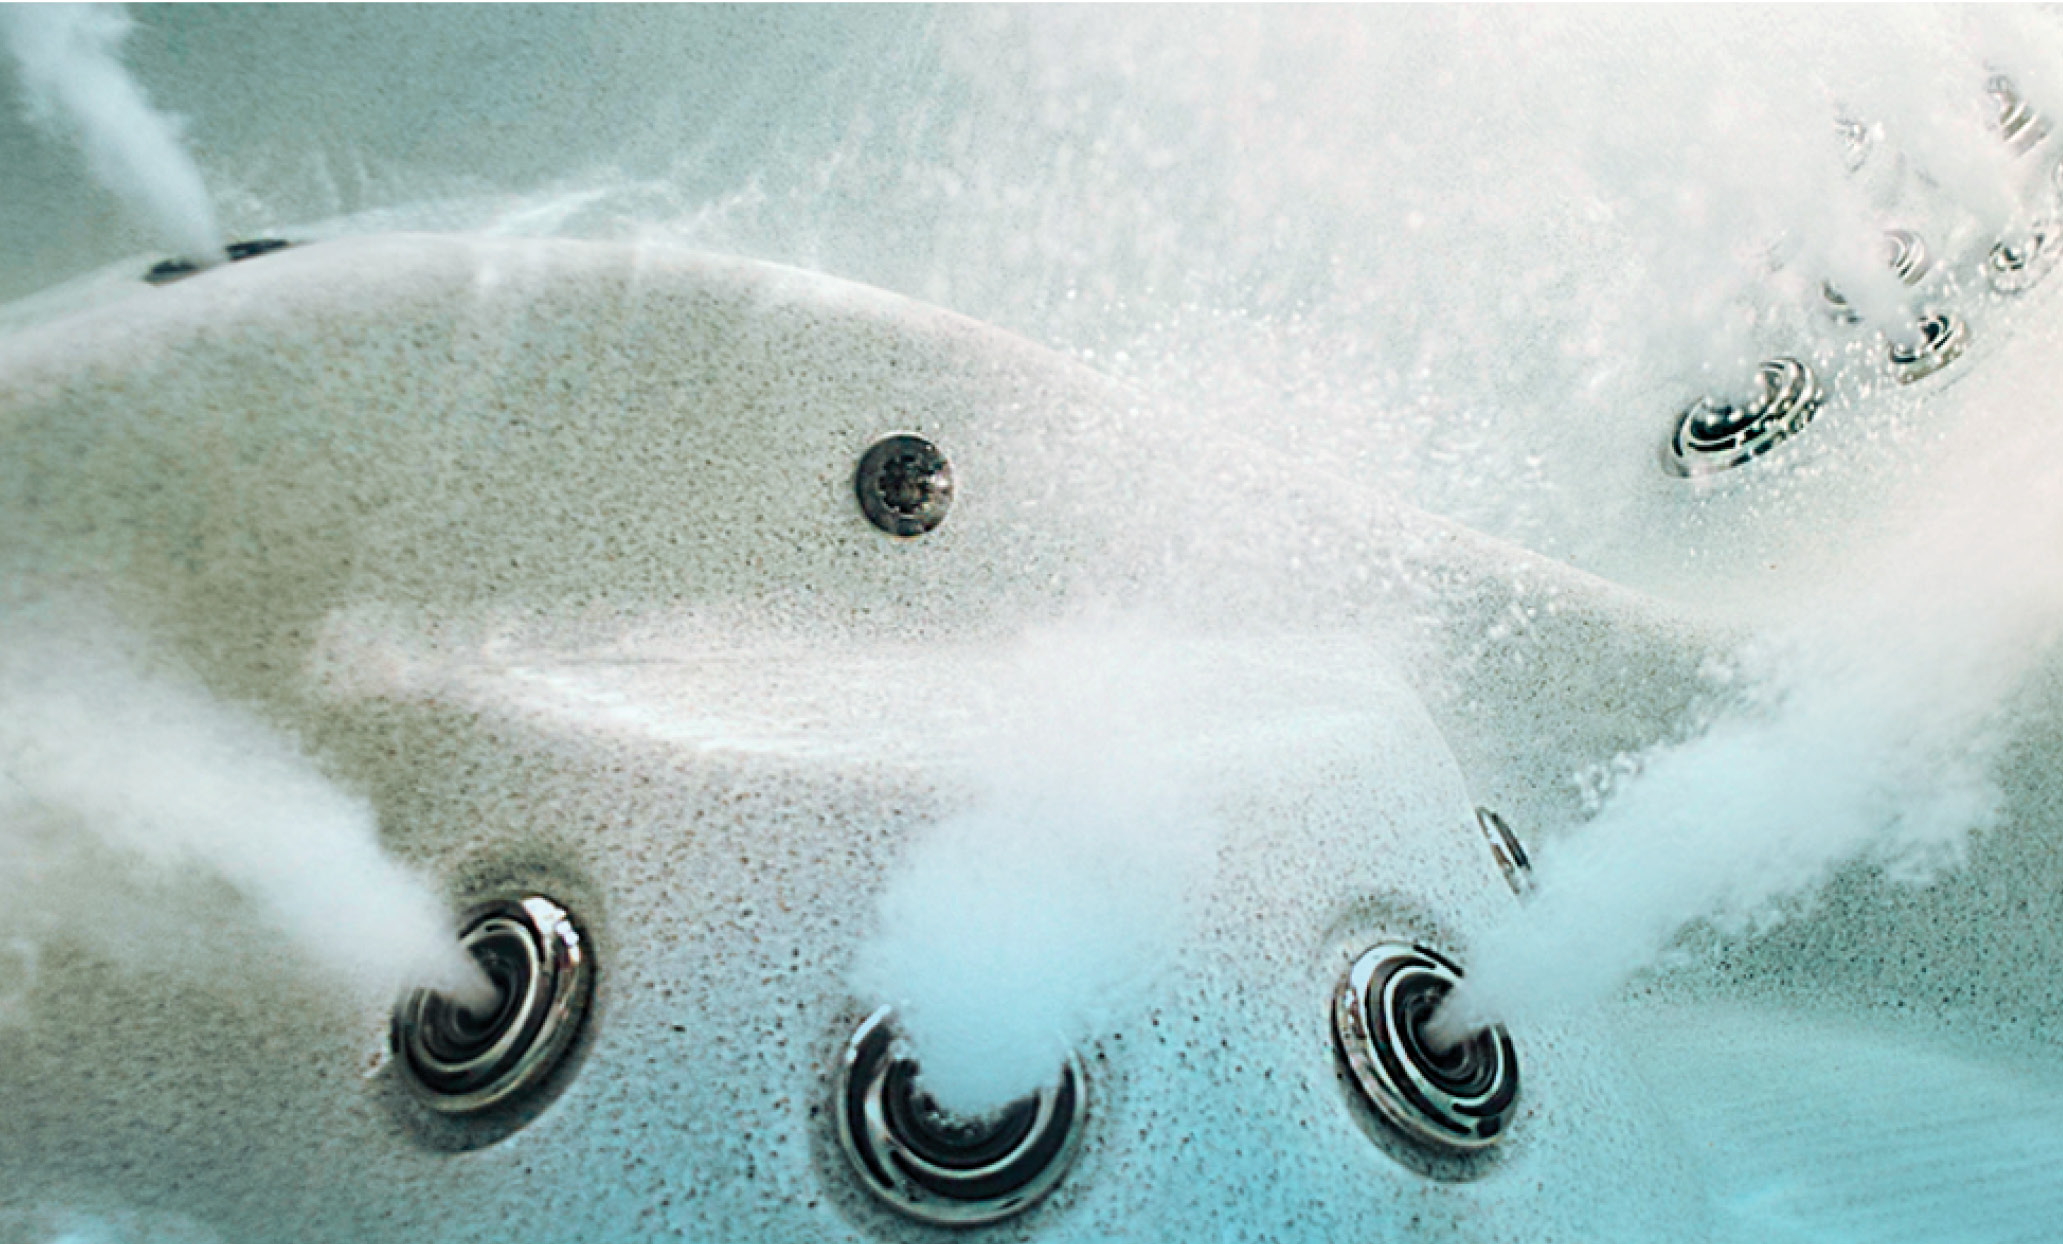 Unterwasserbild der Düsen in einem Whirlpool